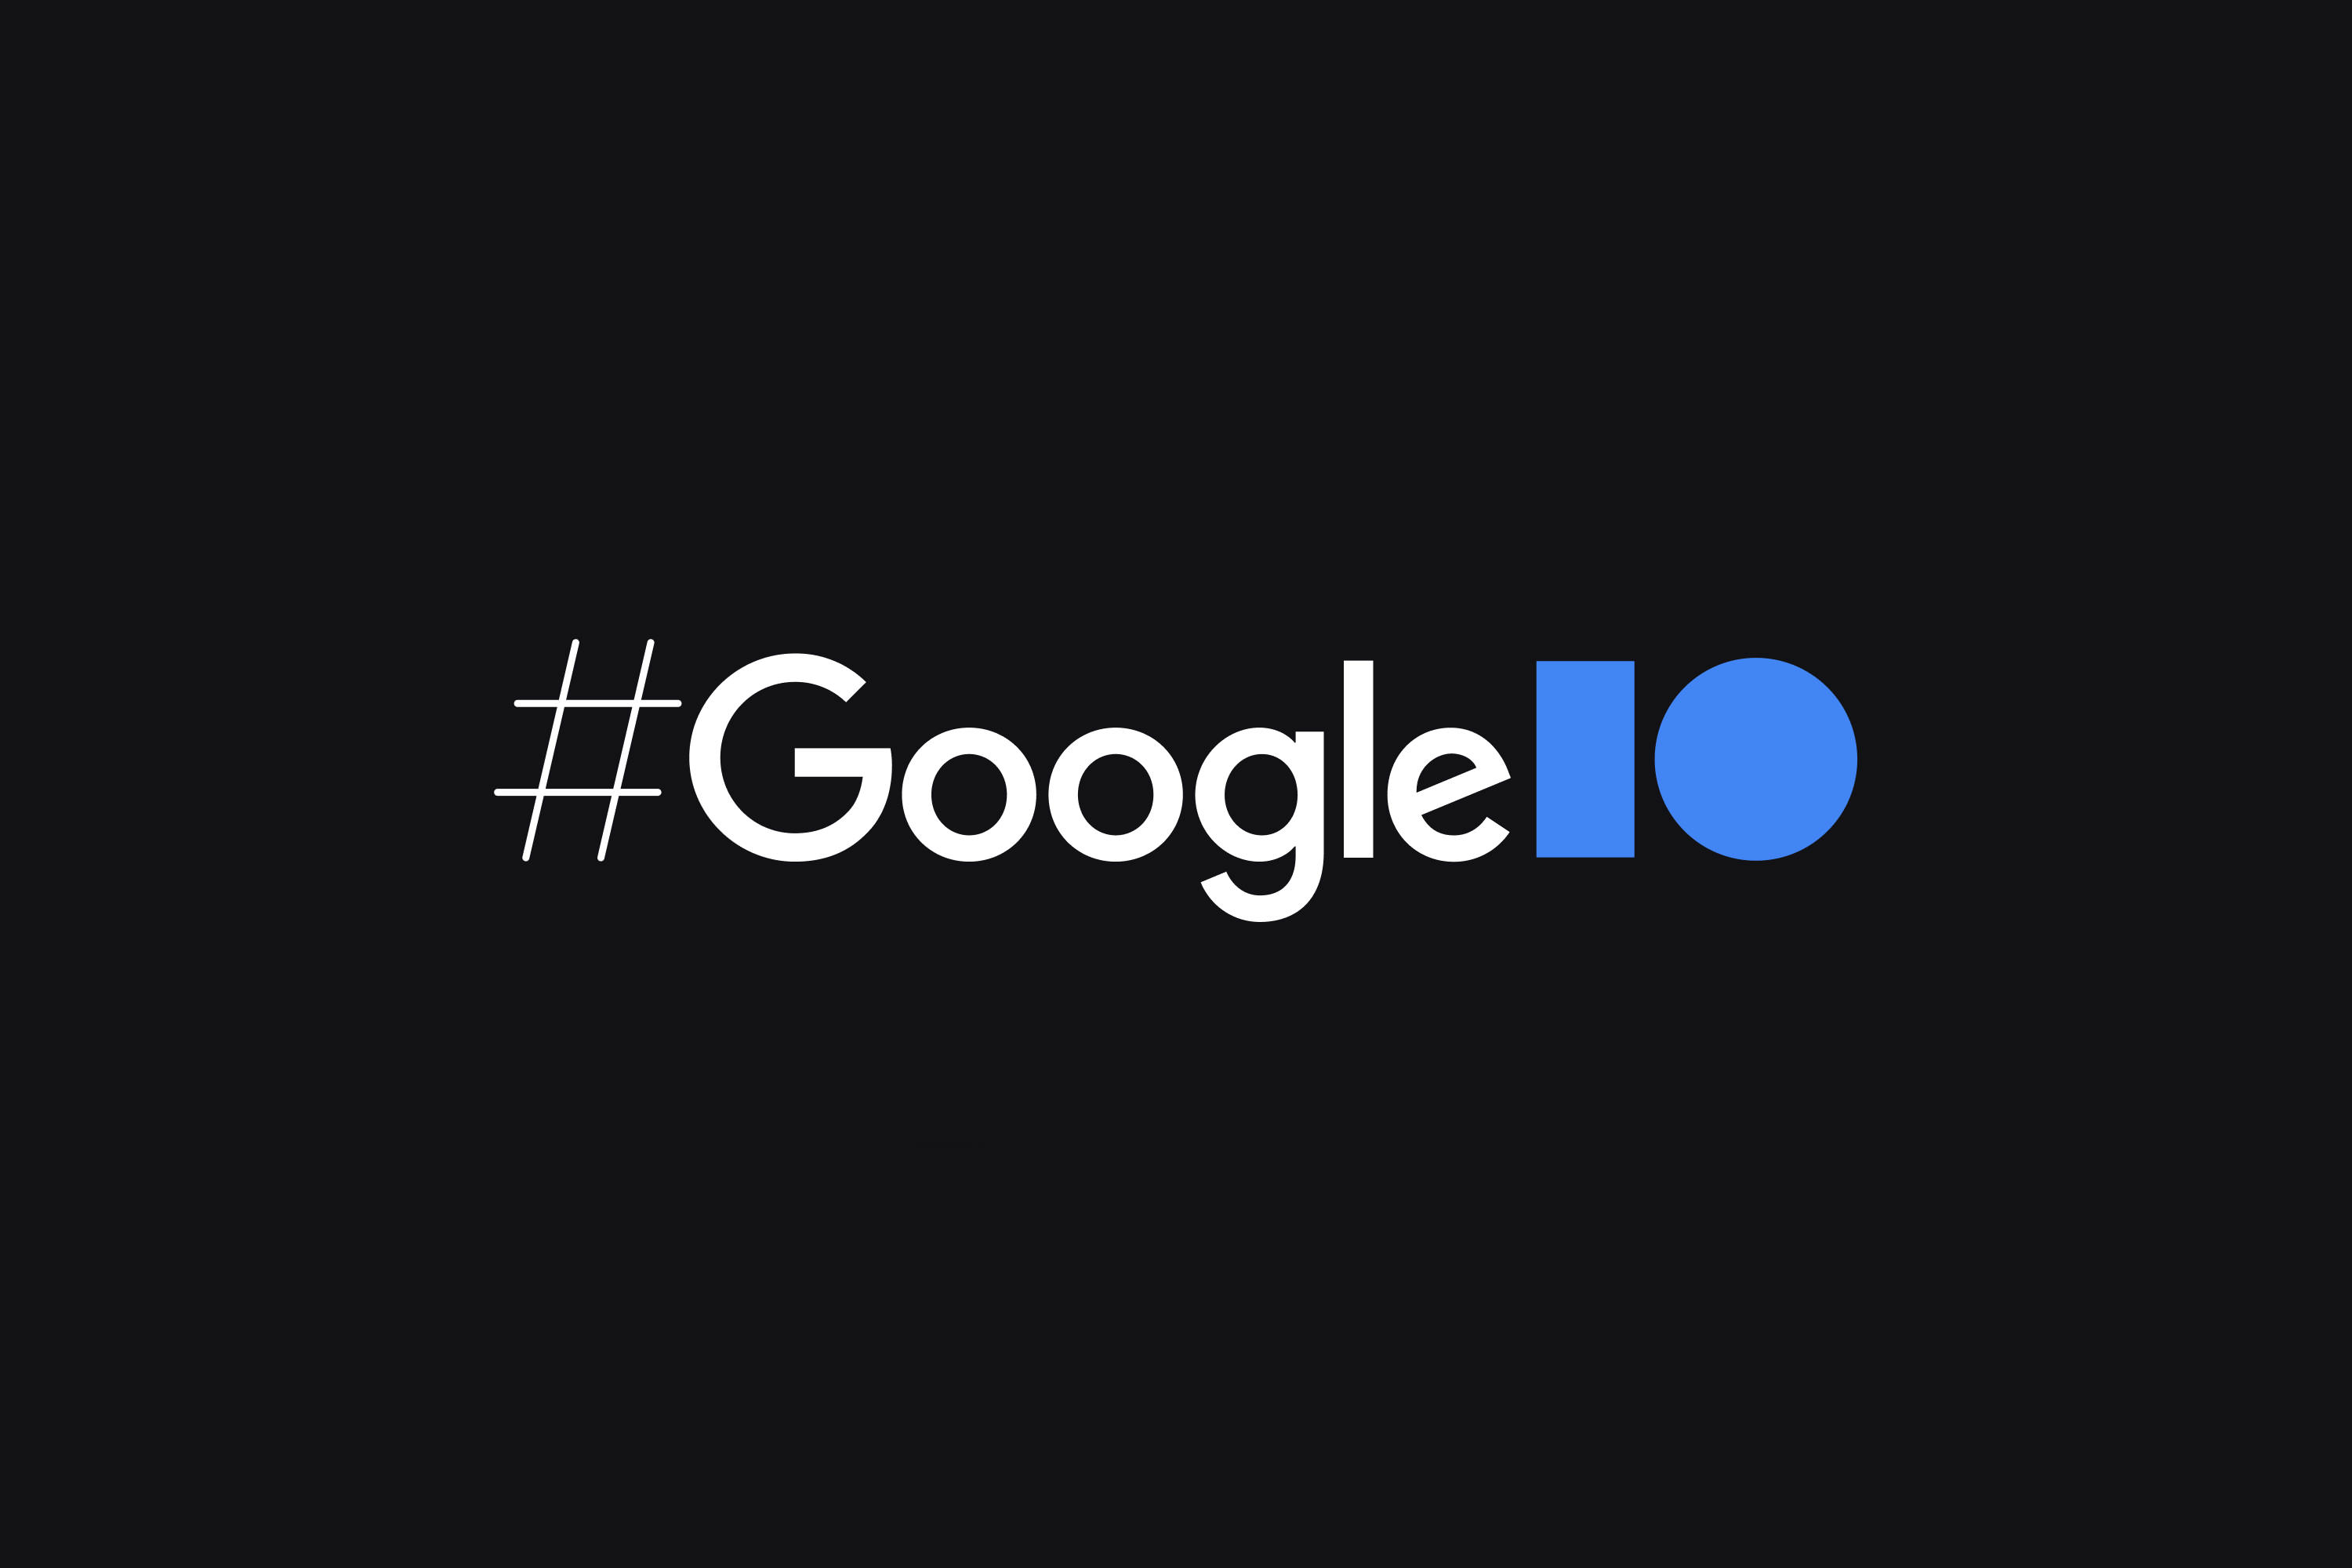 هشتگ کنفرانس Google I/O در پس زمینه مشکی